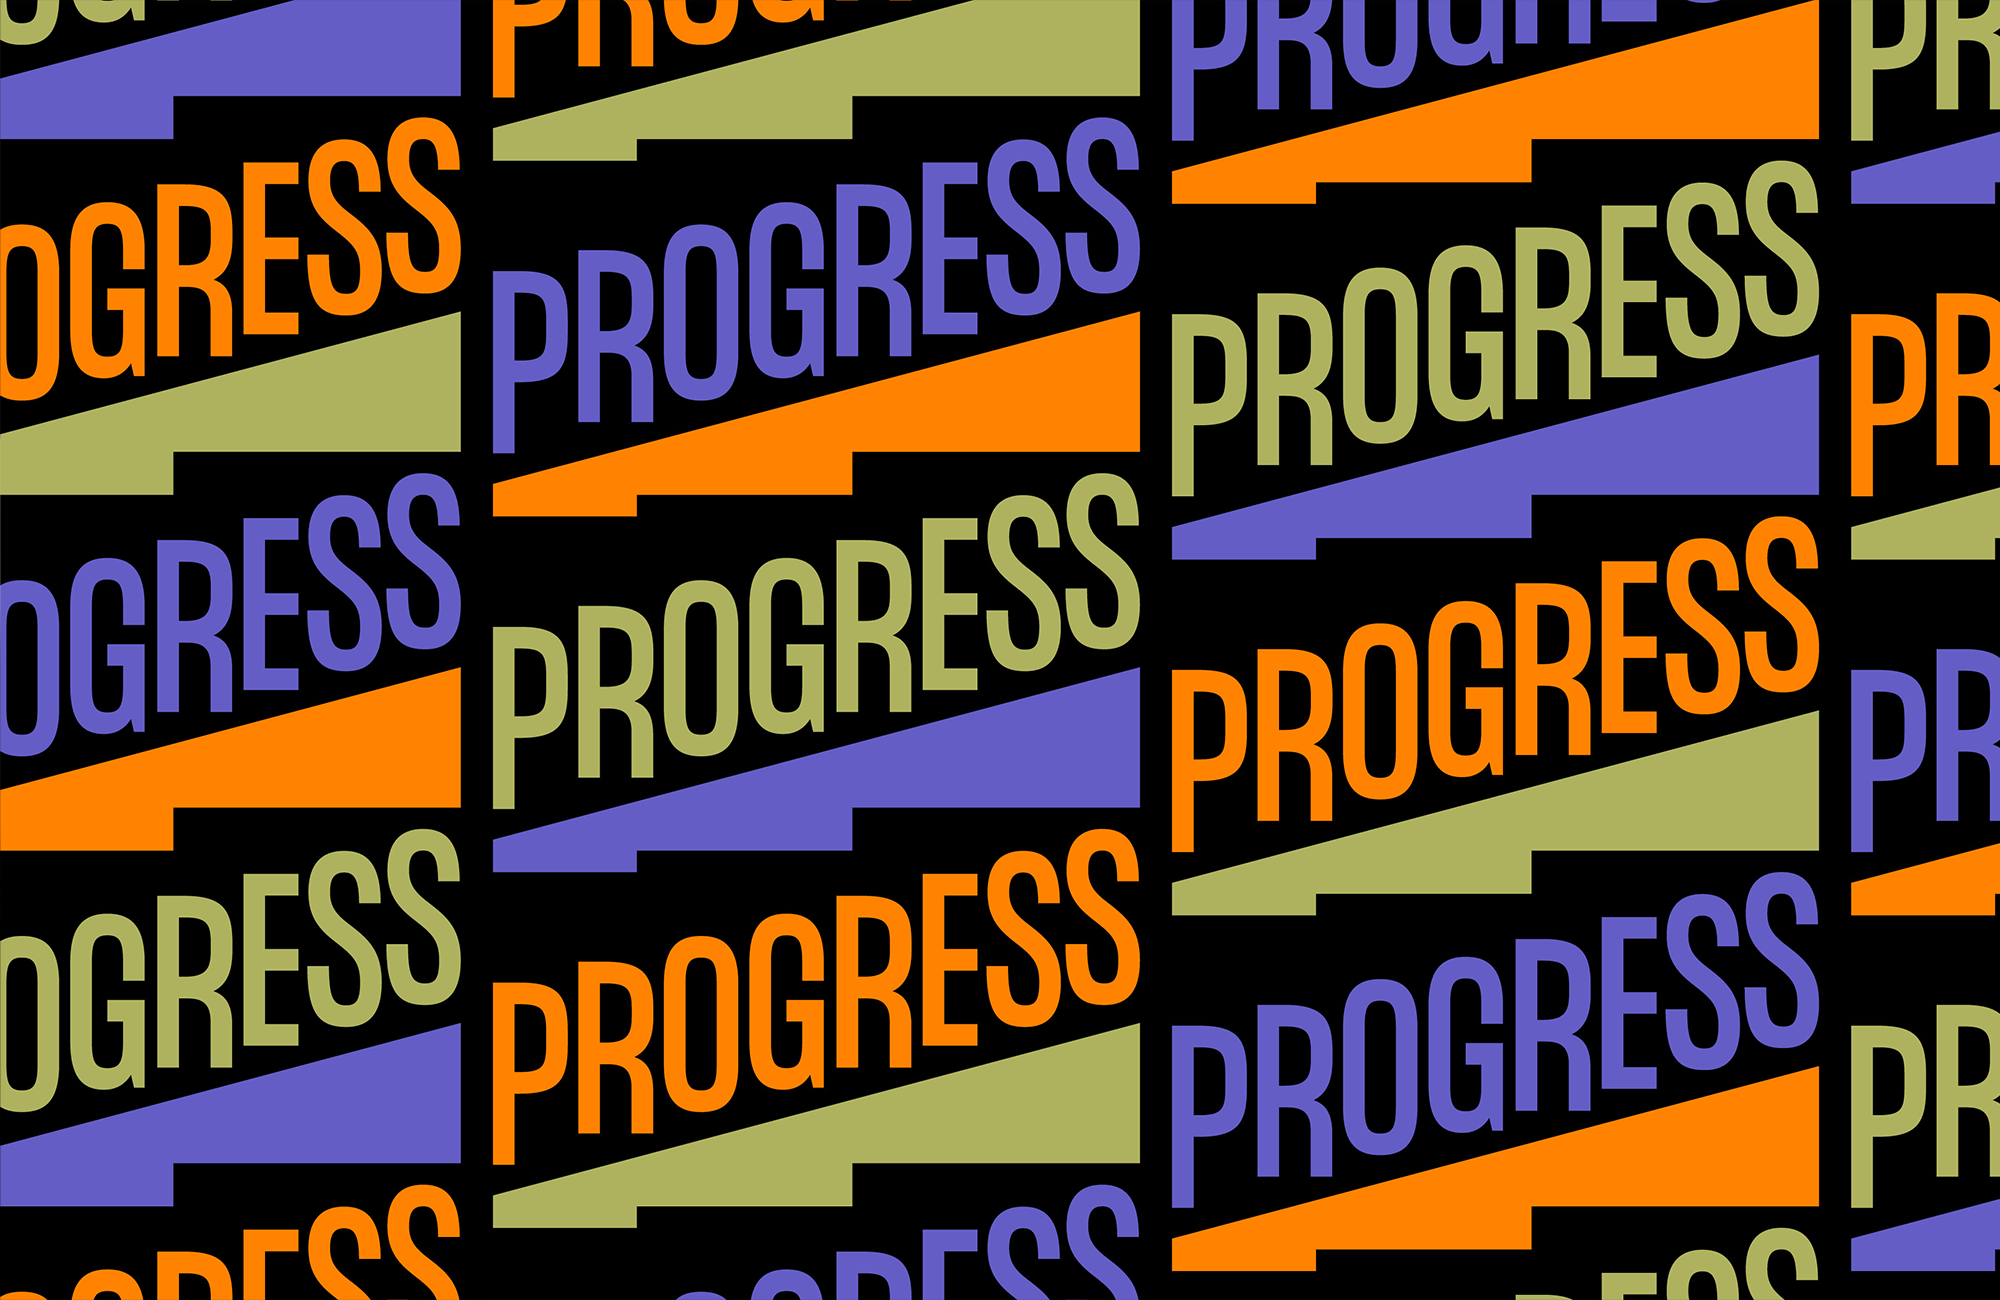 progress-thumb-07.png